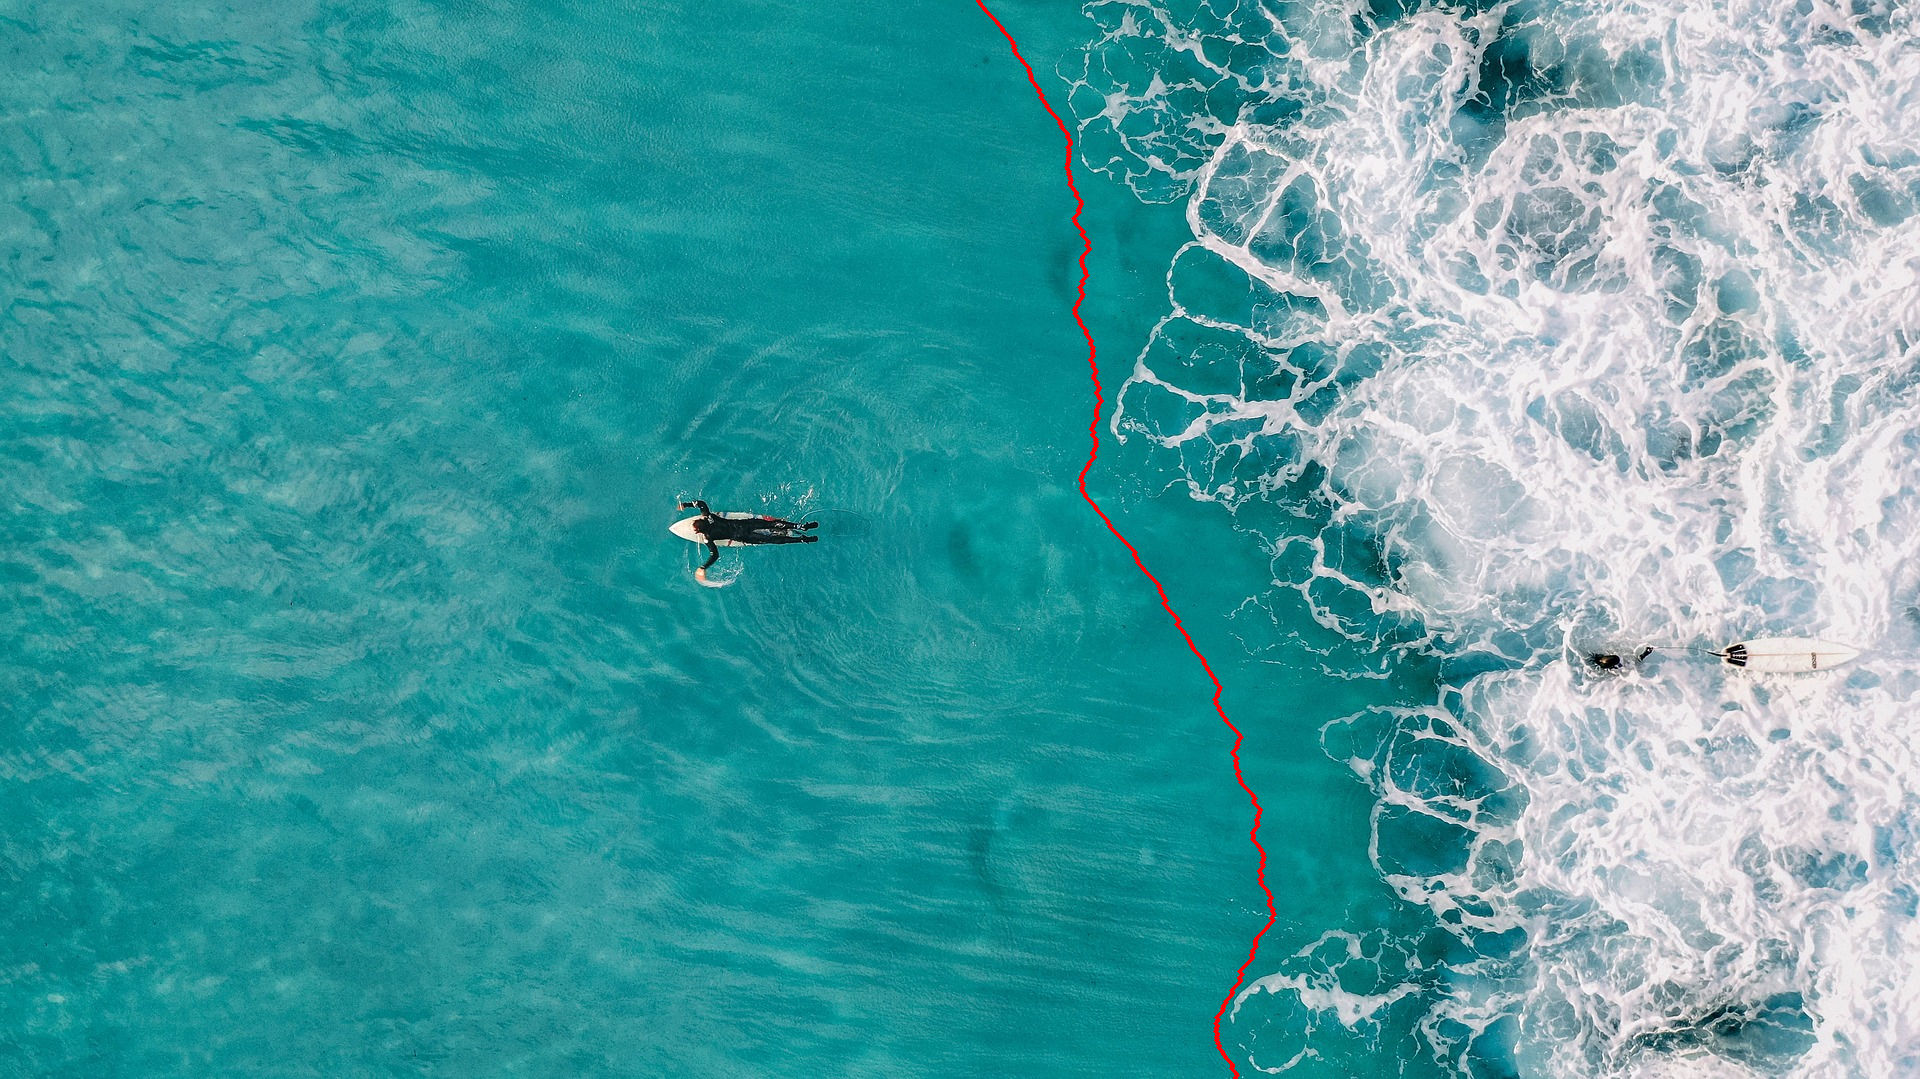 冲浪者图片中发现的最低能量接缝。接缝通过一条五个像素宽的红线来可视化，实际上接缝只有一个像素宽。